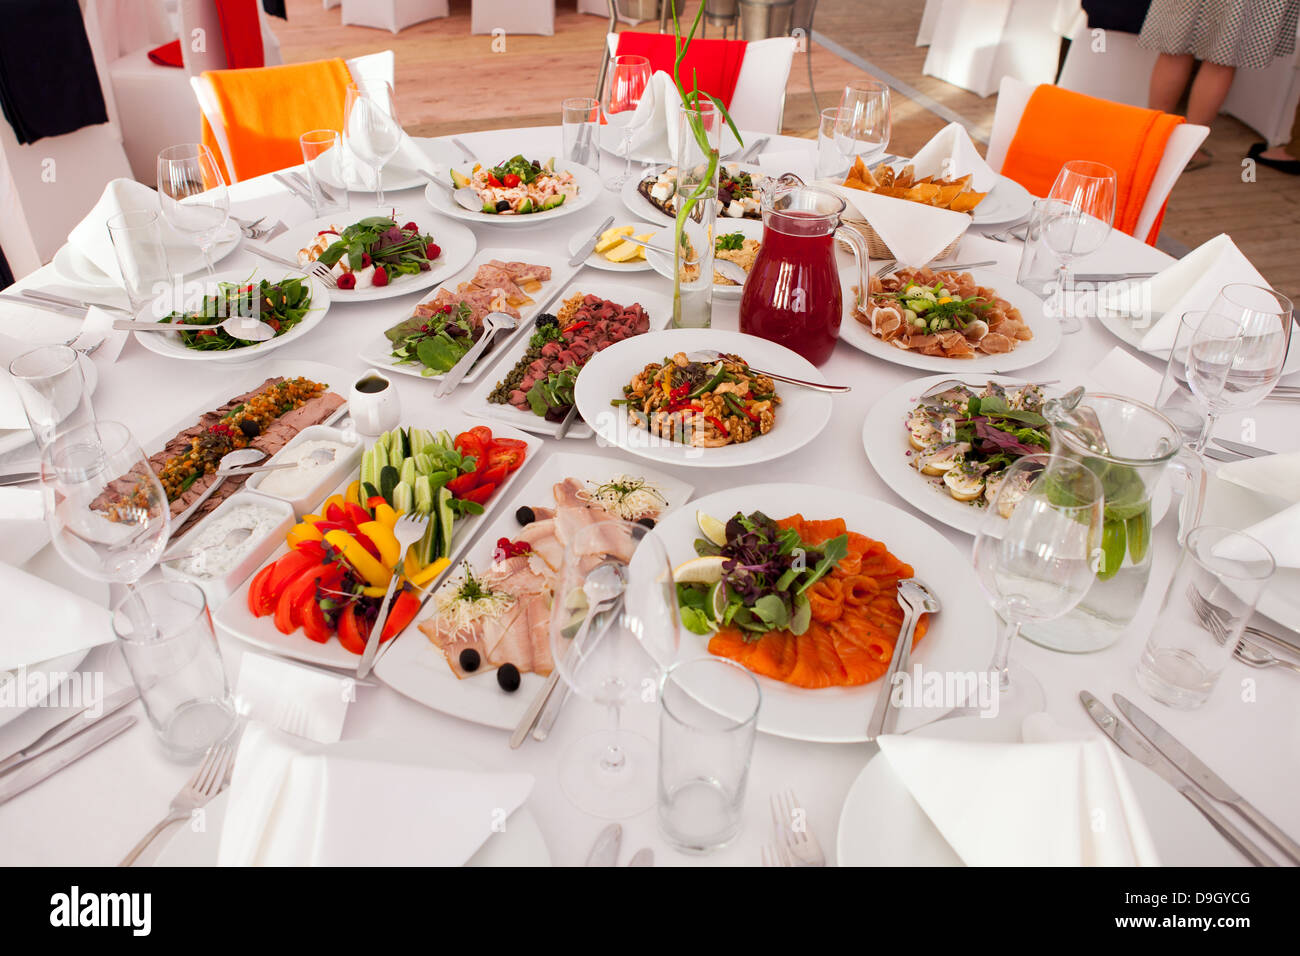 Sélection de la nourriture gastronomique servi sur une table en attente pour les clients Banque D'Images